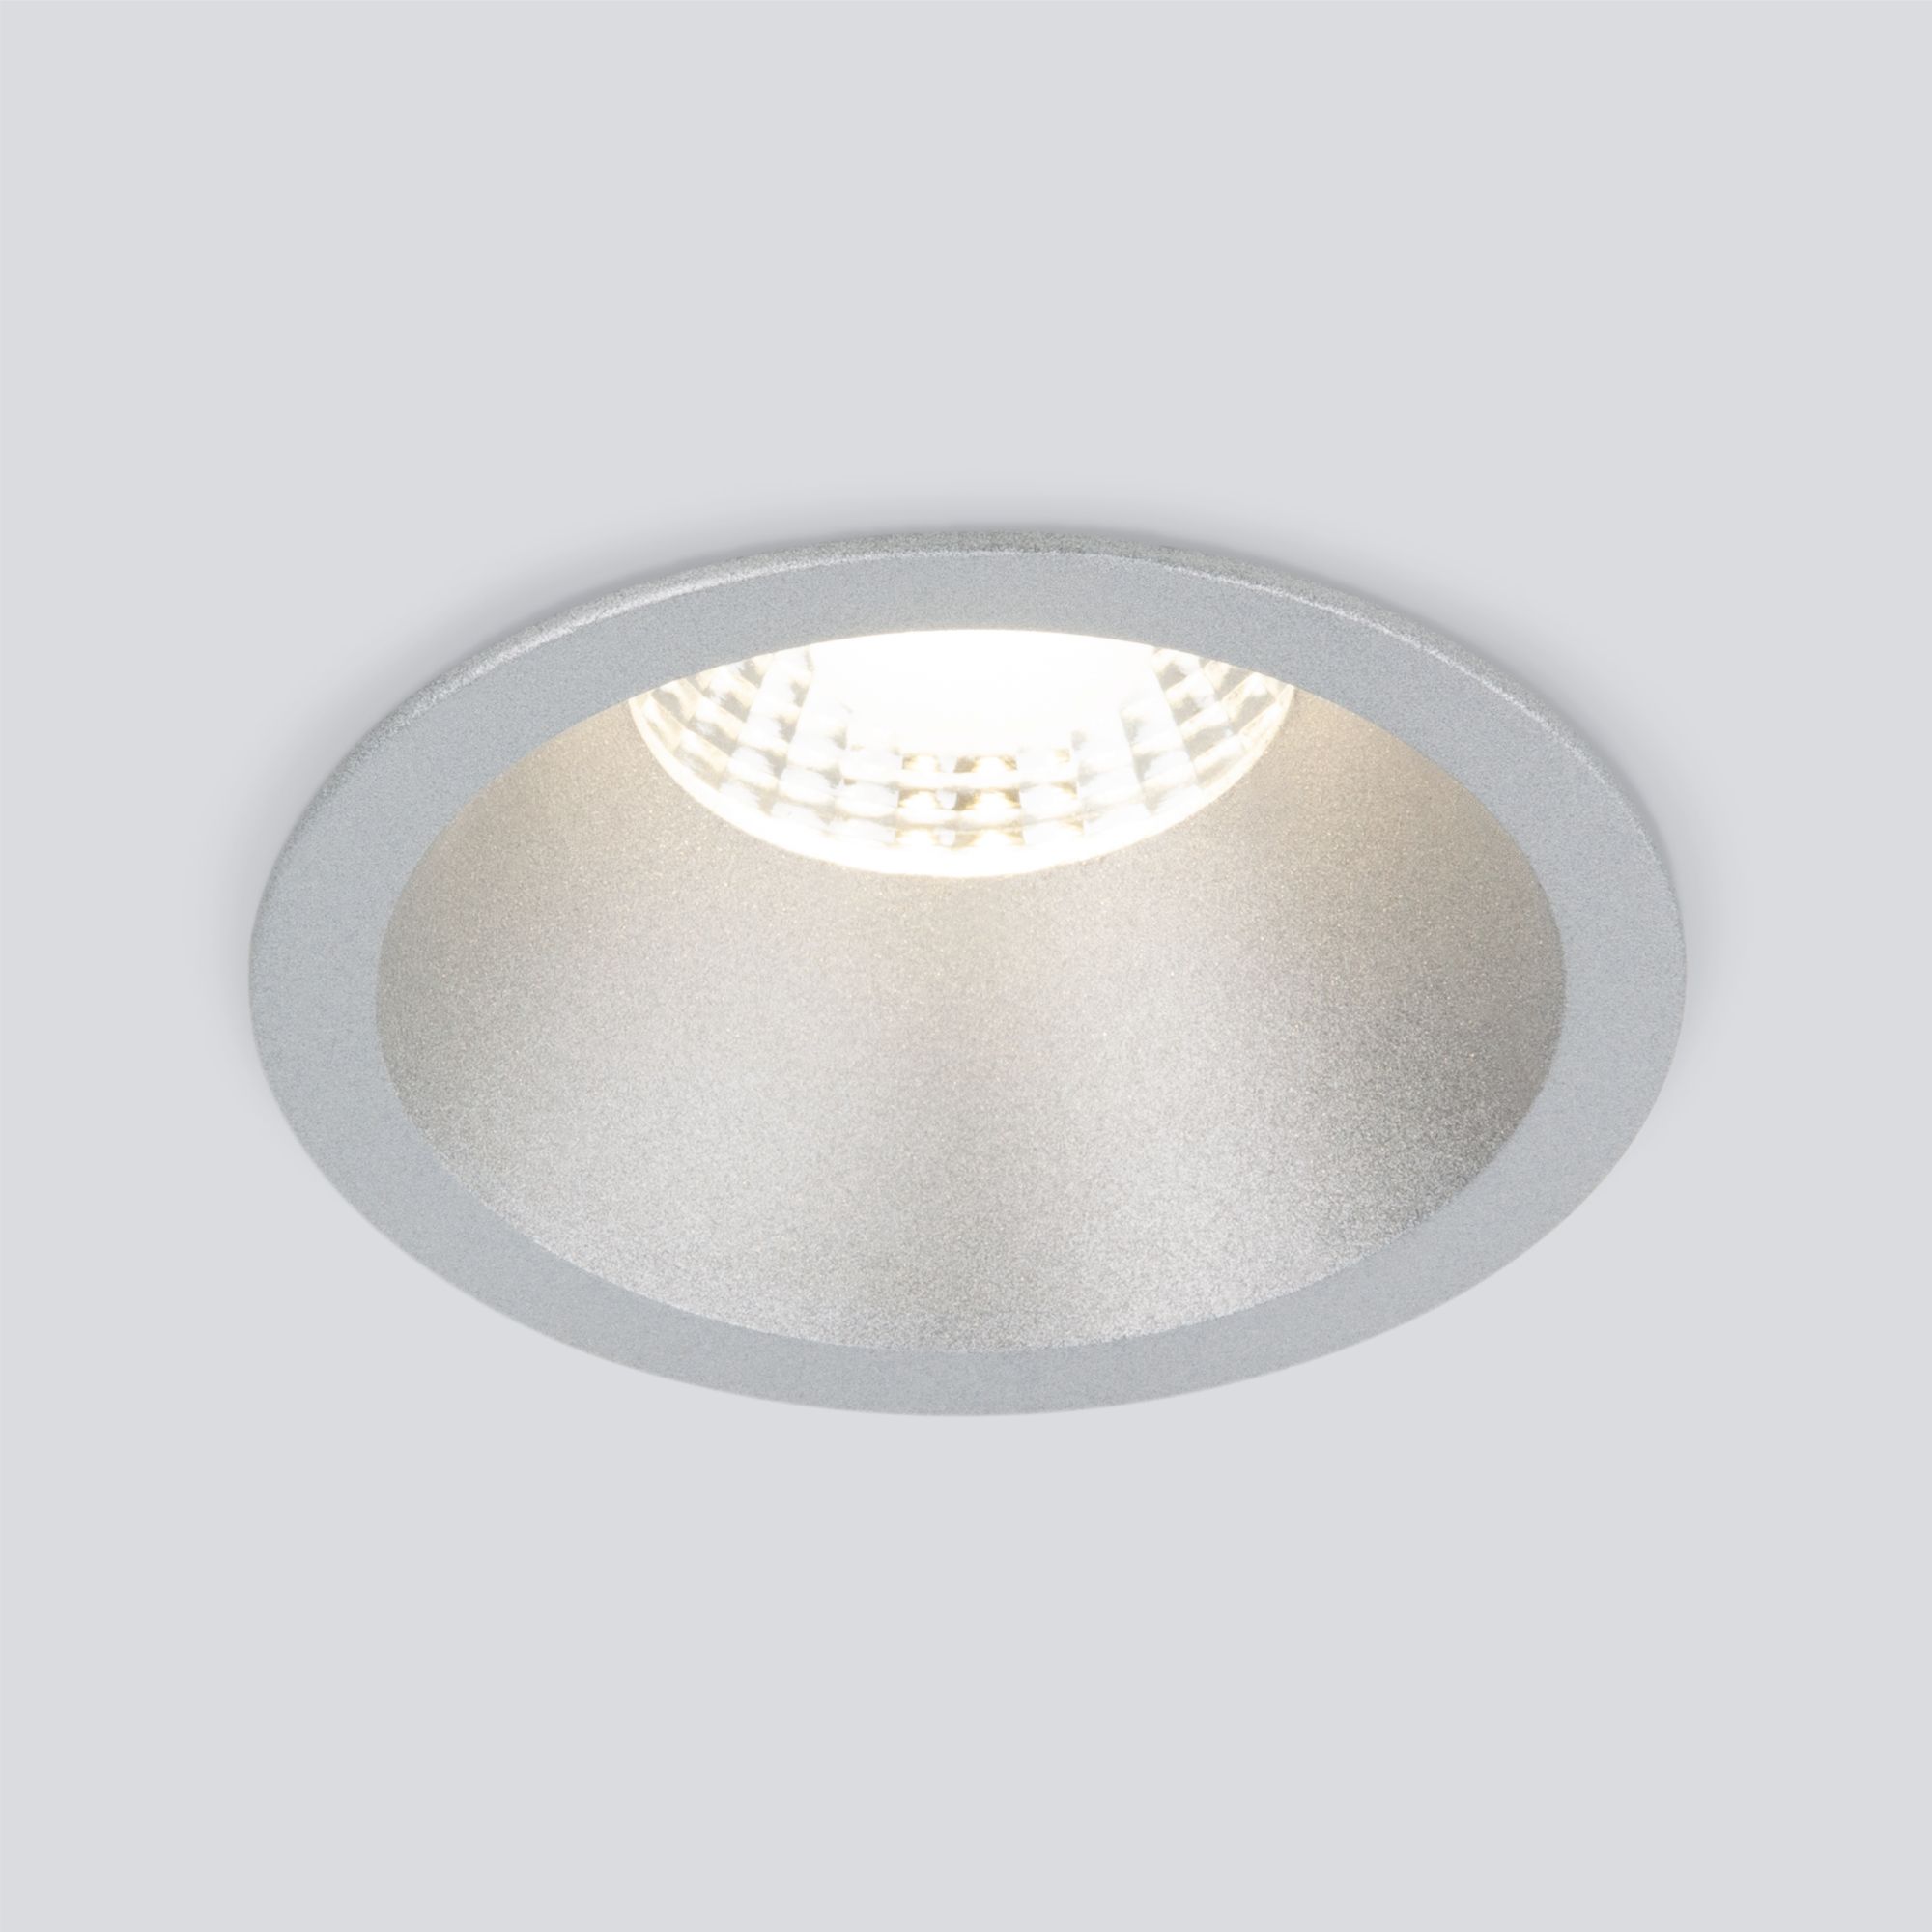 Встраиваемый точечный светодиодный светильник 15266/LED 7W 4200K серебро Elektrostandard